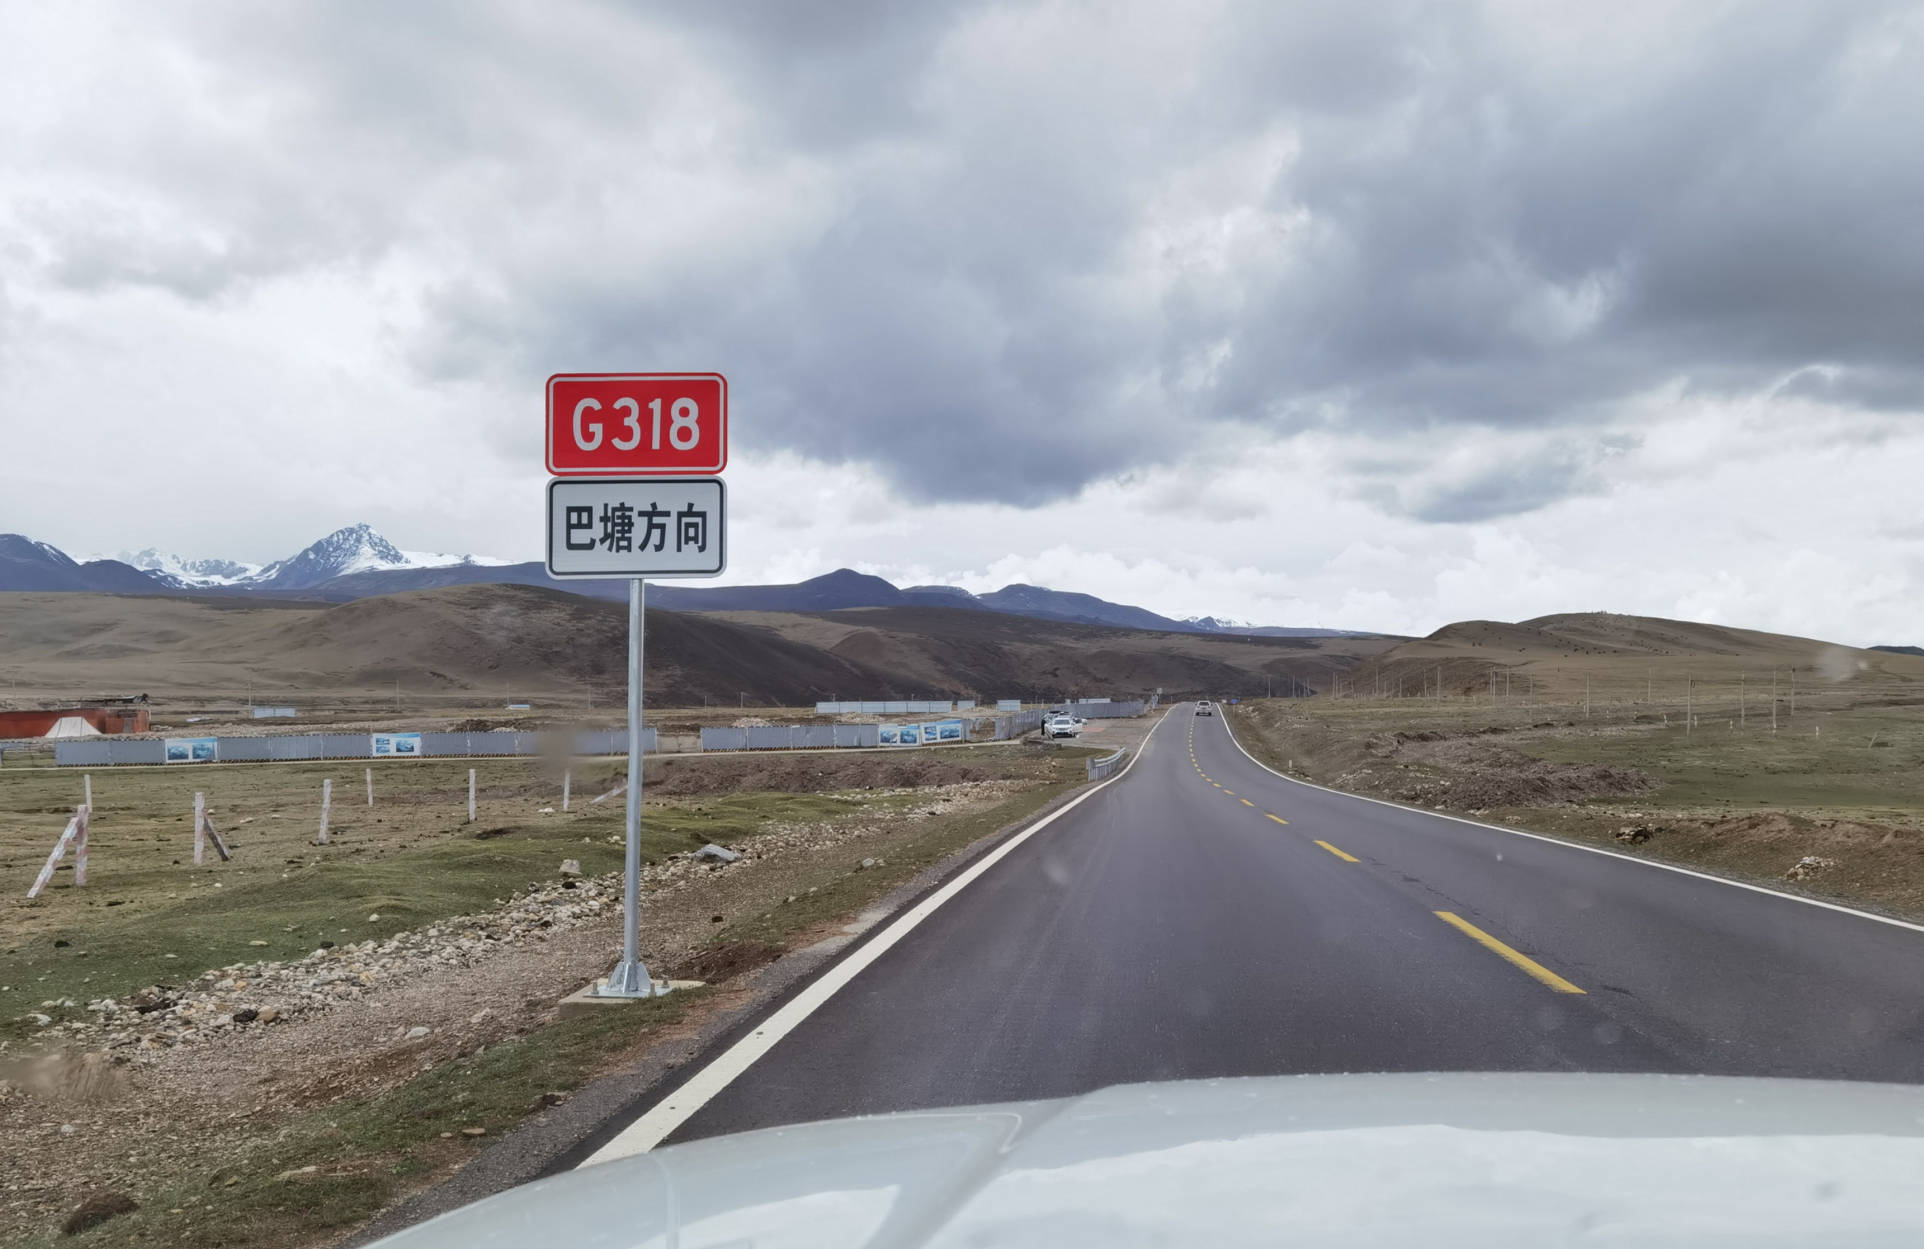 川藏g318国道最新路况只要不遇雨雪天轿车一路都能走